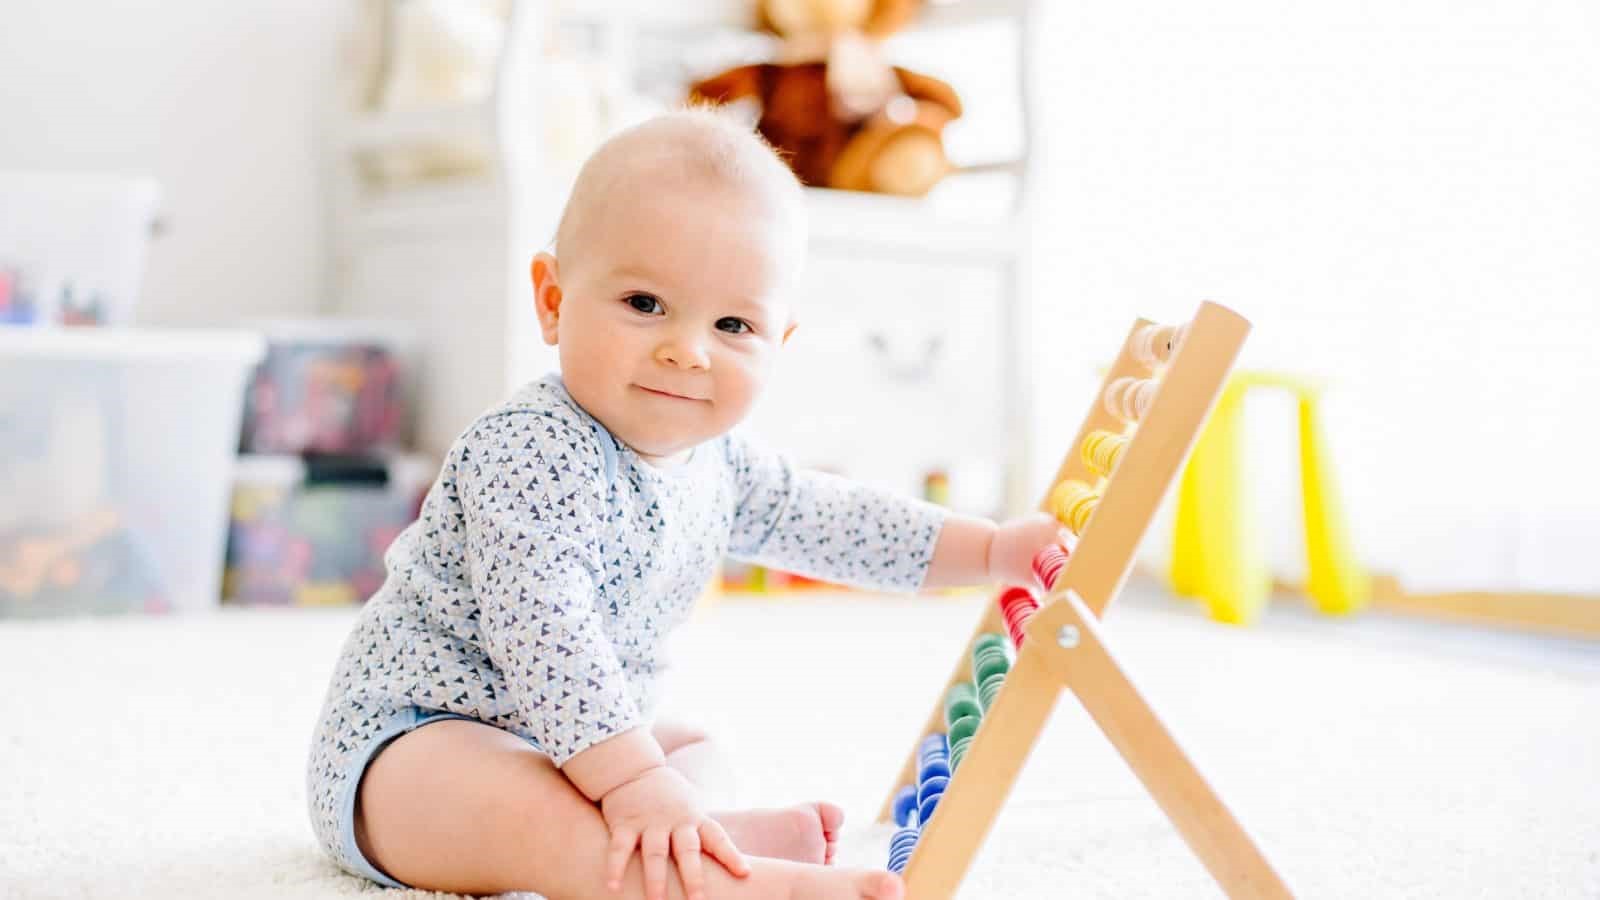 در زمان خرید اسباب بازی برای نوزاد، به اندازه وسایل توجه زیادی داشته باشید.